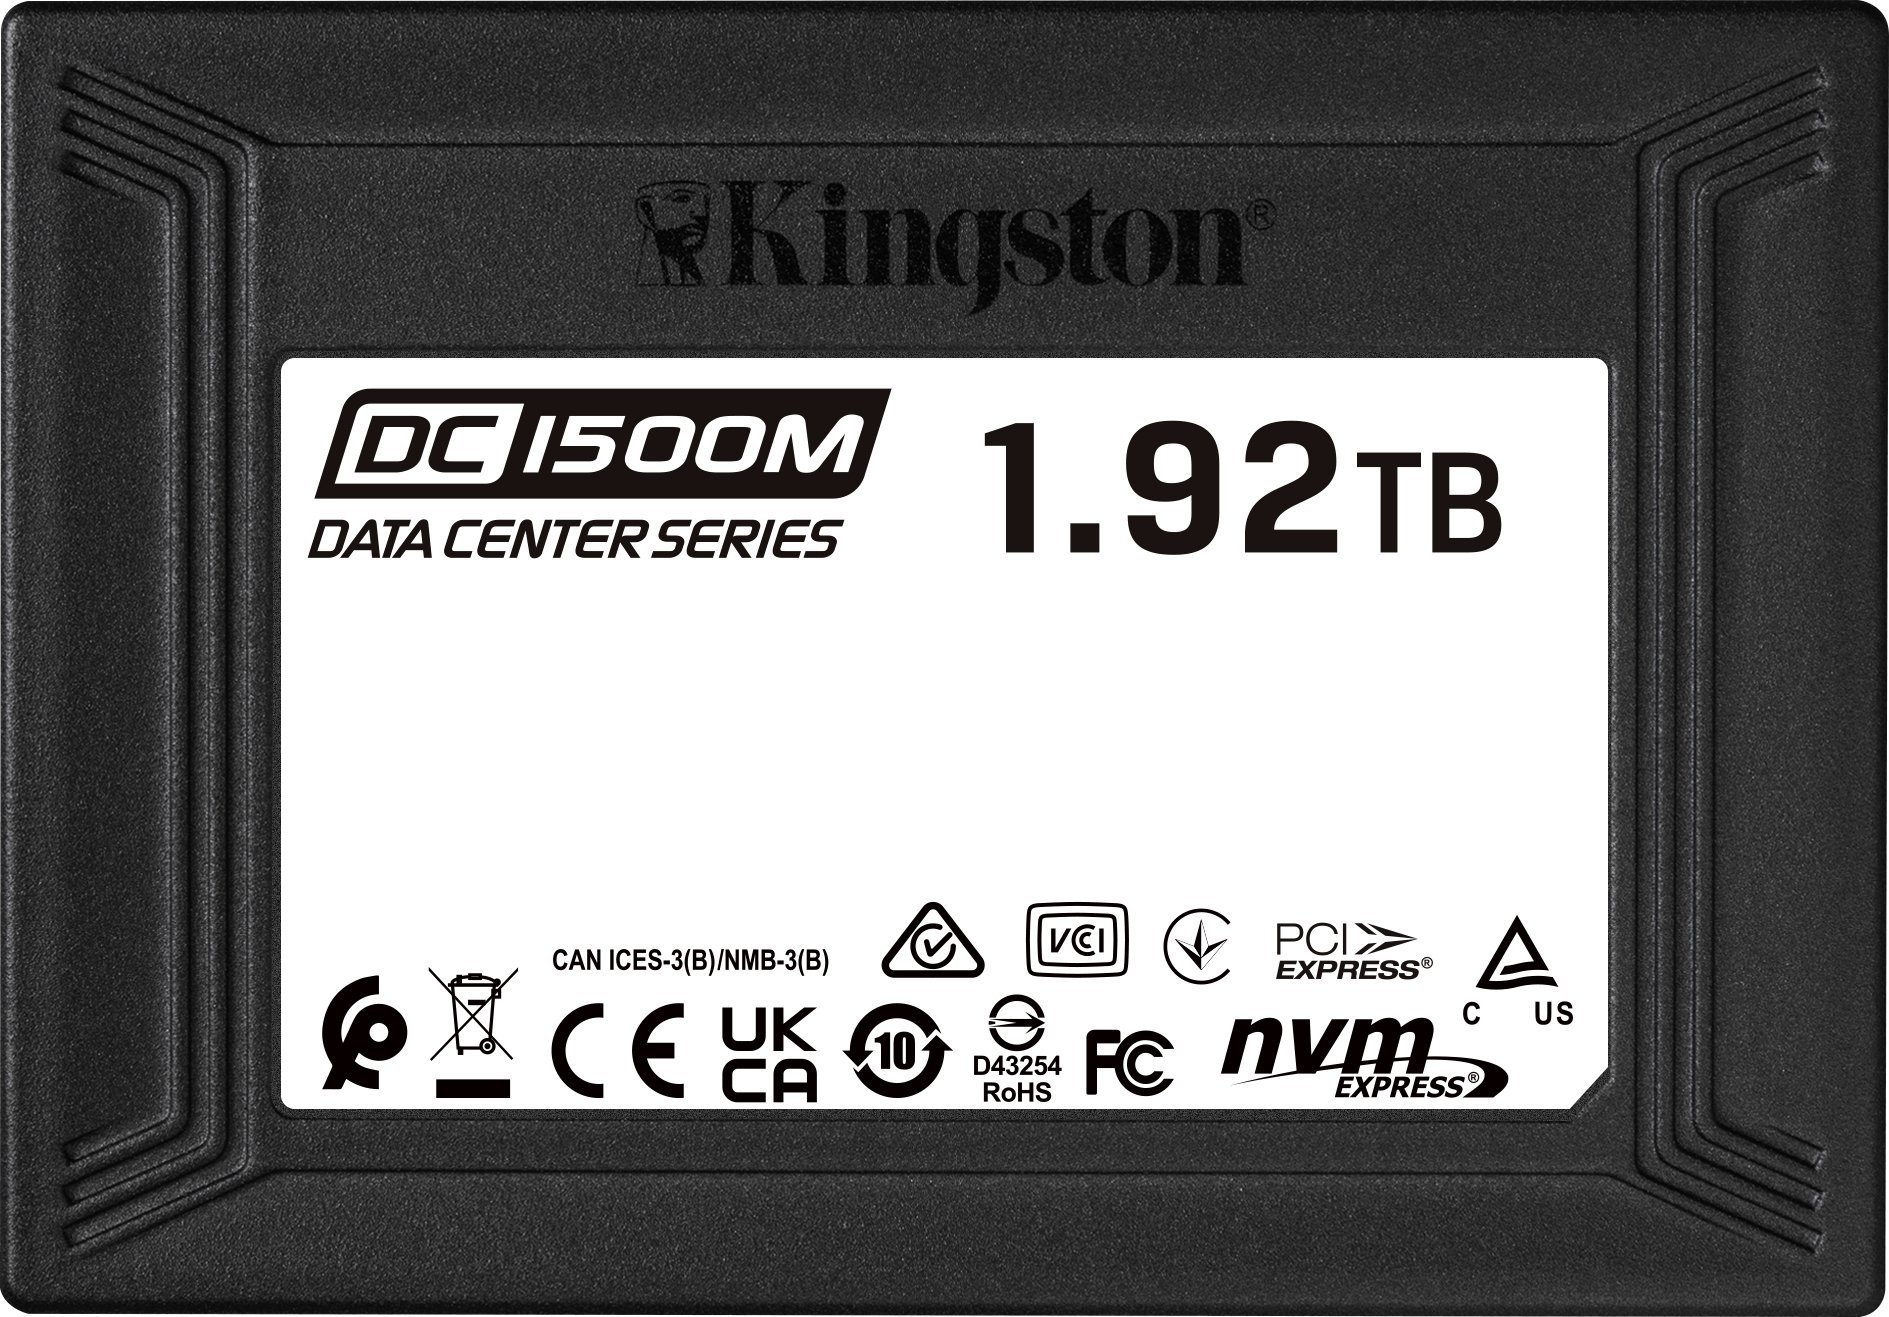 Unitate server Kingston DC1500M 1,92 TB U.2 PCI-E x4 Gen 3.0 NVMe (SEDC1500M/1920G)